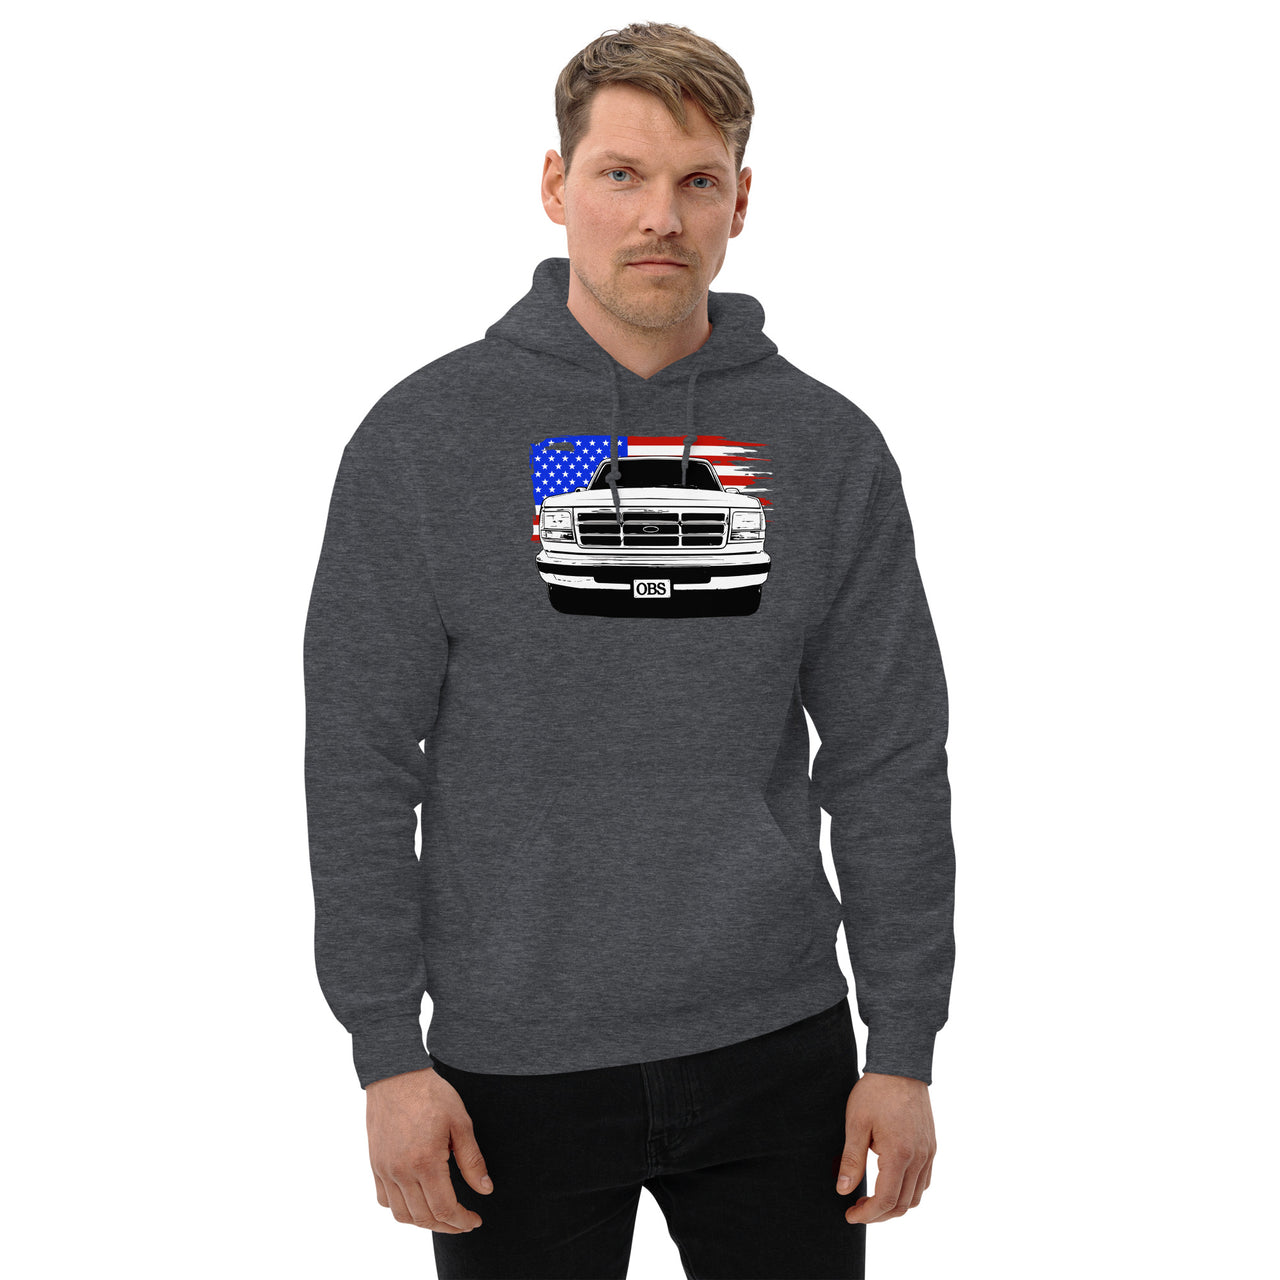 OBS American Flag - Hoodie Sweatshirt